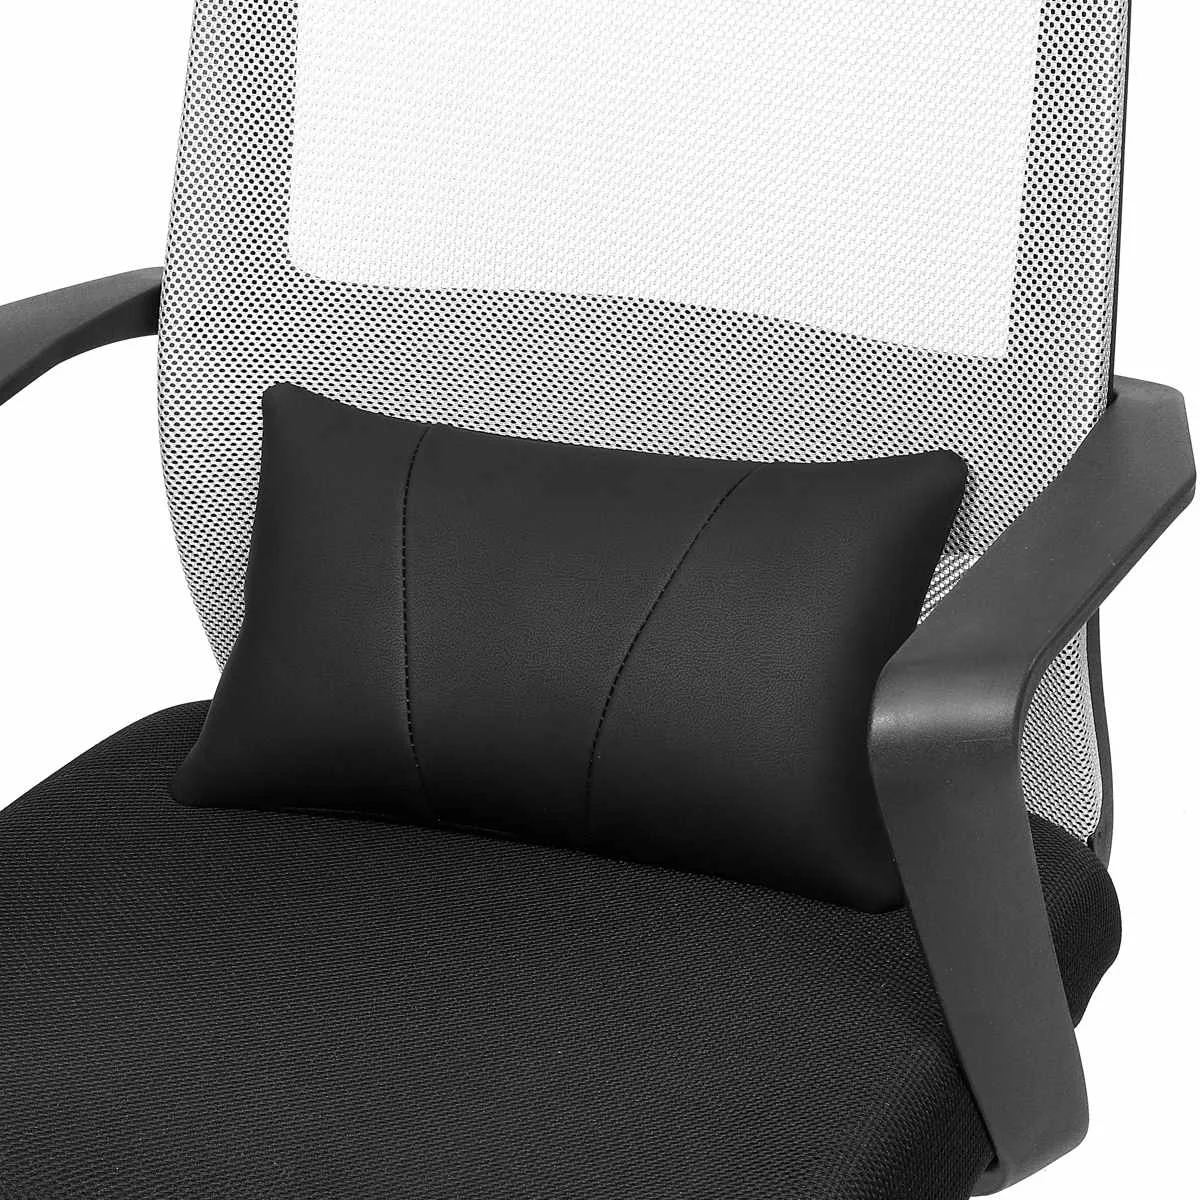 Роскошная мягкая кожаная Автомобильная подушка для шеи на заднее сиденье, поясничная поддержка, массажер, поясная подушка, подушка для стула, сиденье, облегчение боли - Название цвета: Black Lumbar